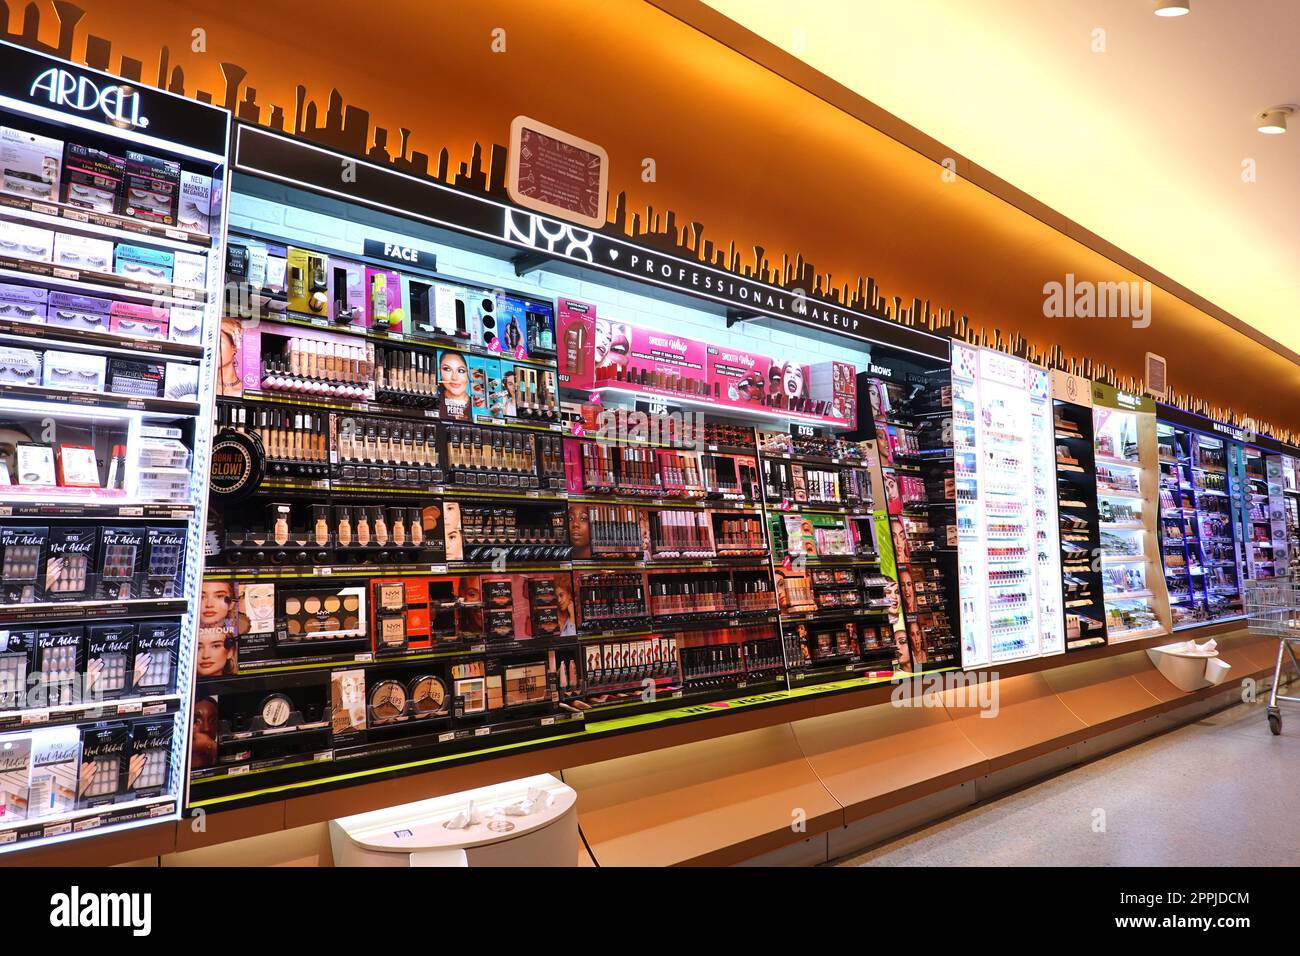 Kosmetik-Abteilung in einem DM-Drogeriemarkt Foto Stock